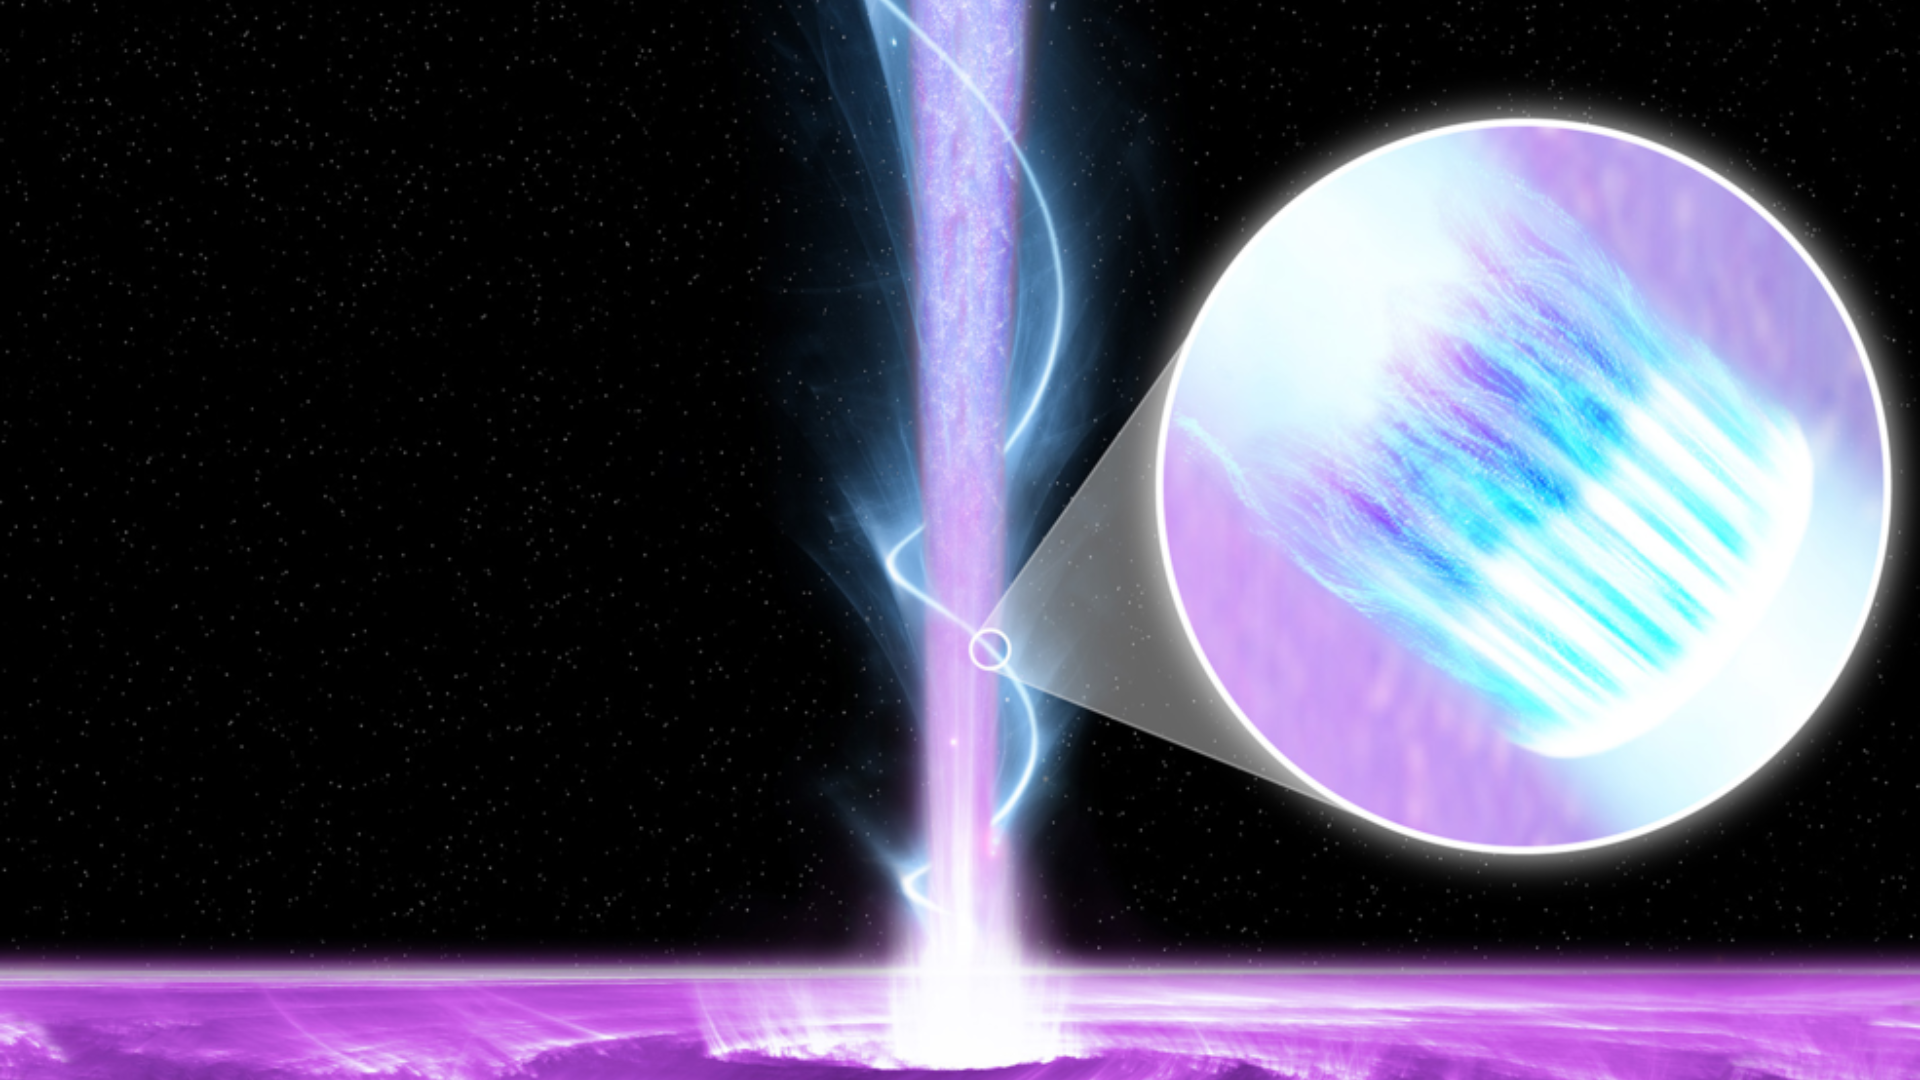 Một siêu lỗ đen đang bắn thẳng chùm tia năng lượng cao về phía Trái Đất - Ảnh 1.